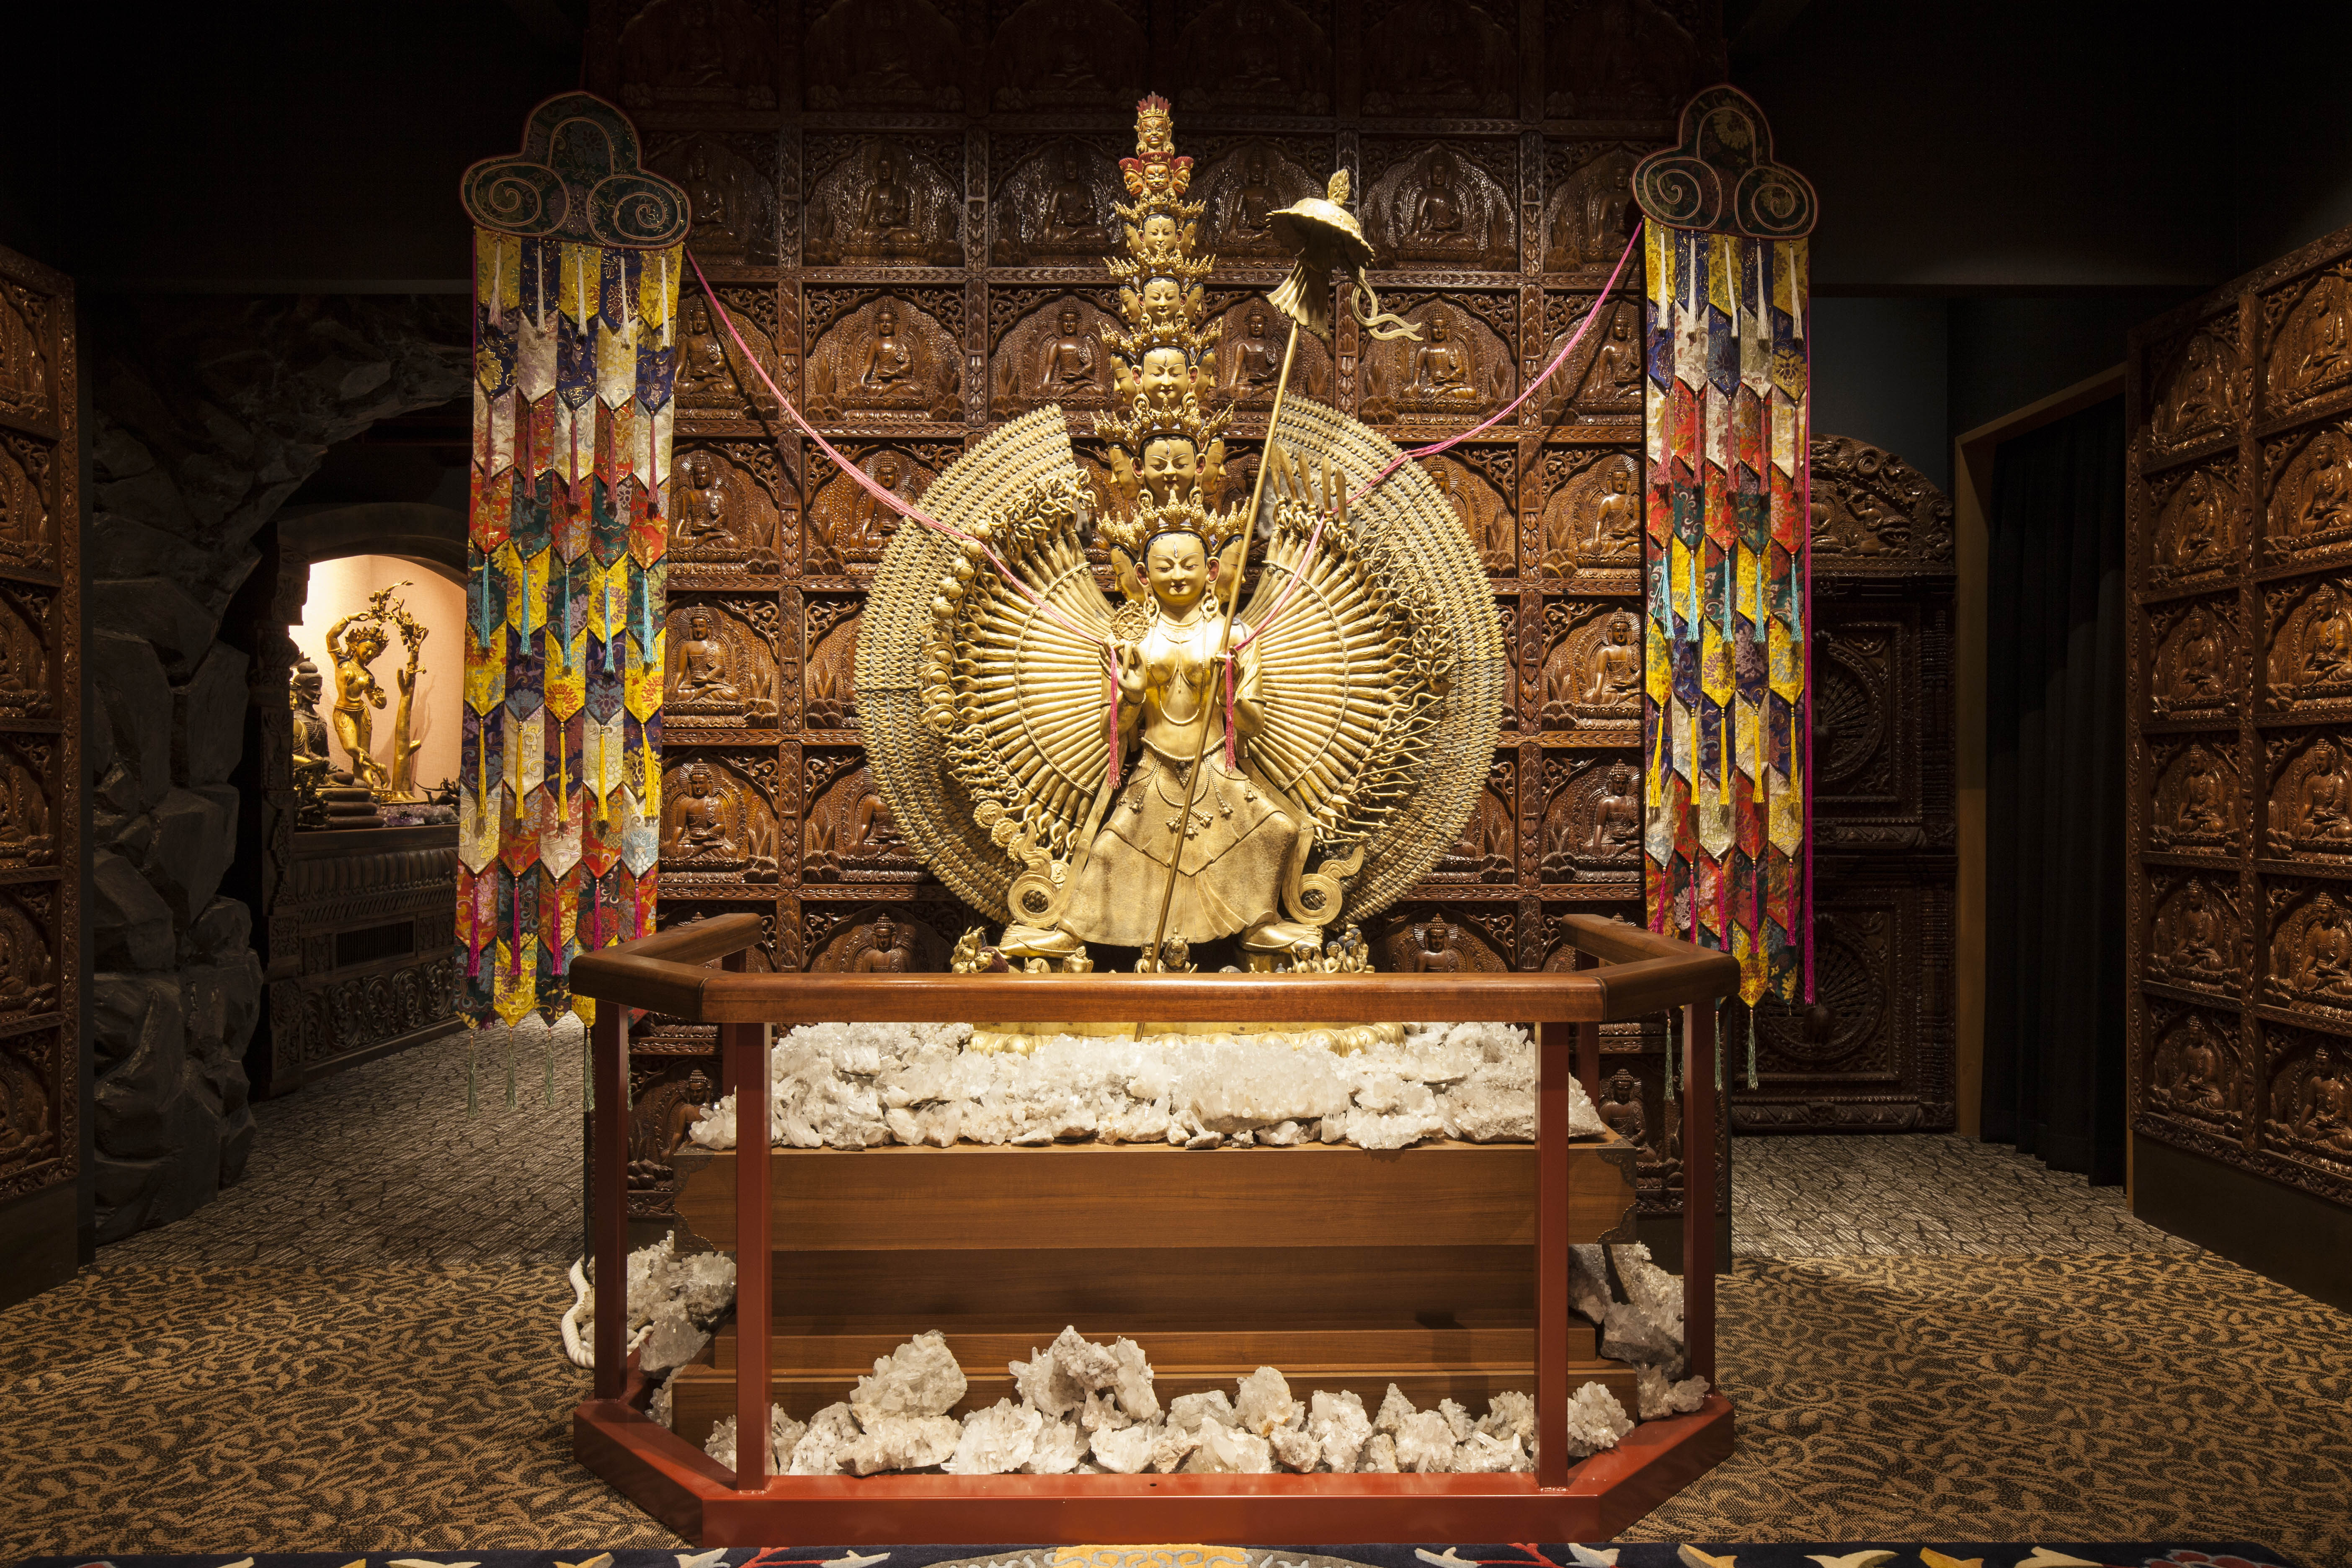 北インド・チベット仏教美術展「安養院寺宝堂」グランドオープン。9/21・22「オープニング記念イベント」開催、チベット高僧来日